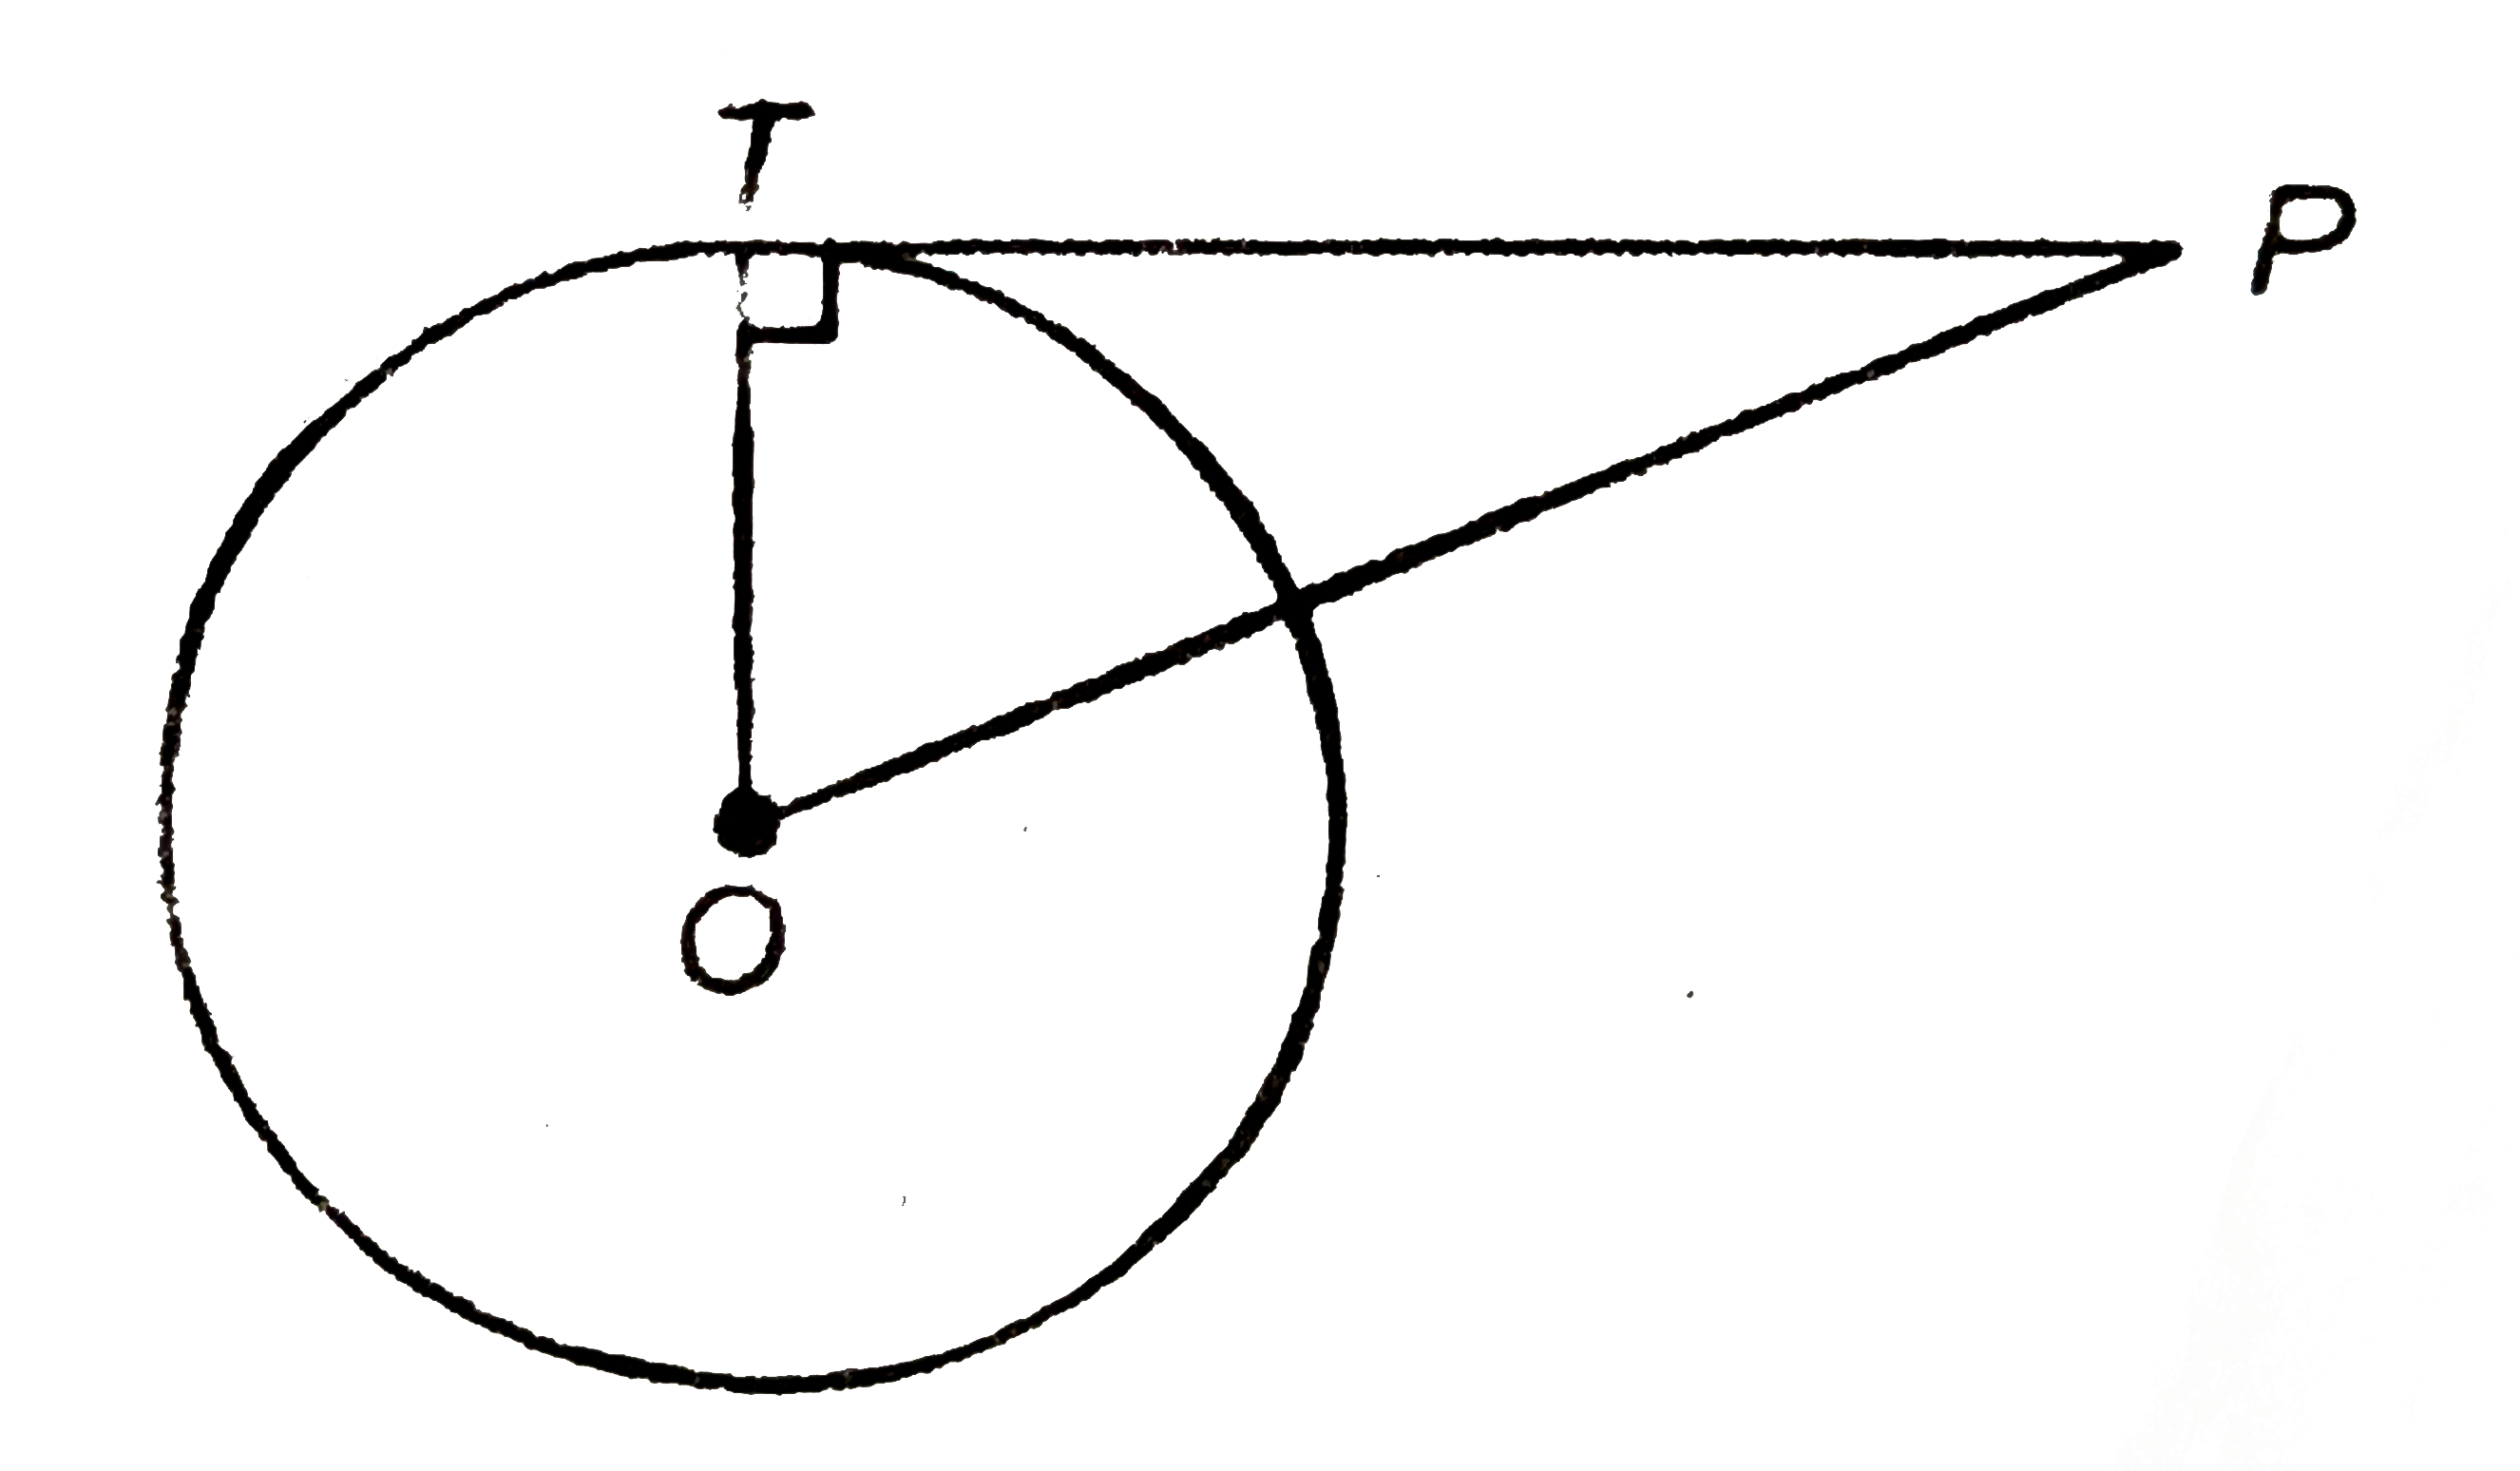 PT दिए गए चित्र में O केंद्र वाले वृत्त की एक स्पर्श रेखा है| यदि OT=6 cm और OP=10 cm, तब स्पर्श रेखा PT की लम्बाई है: